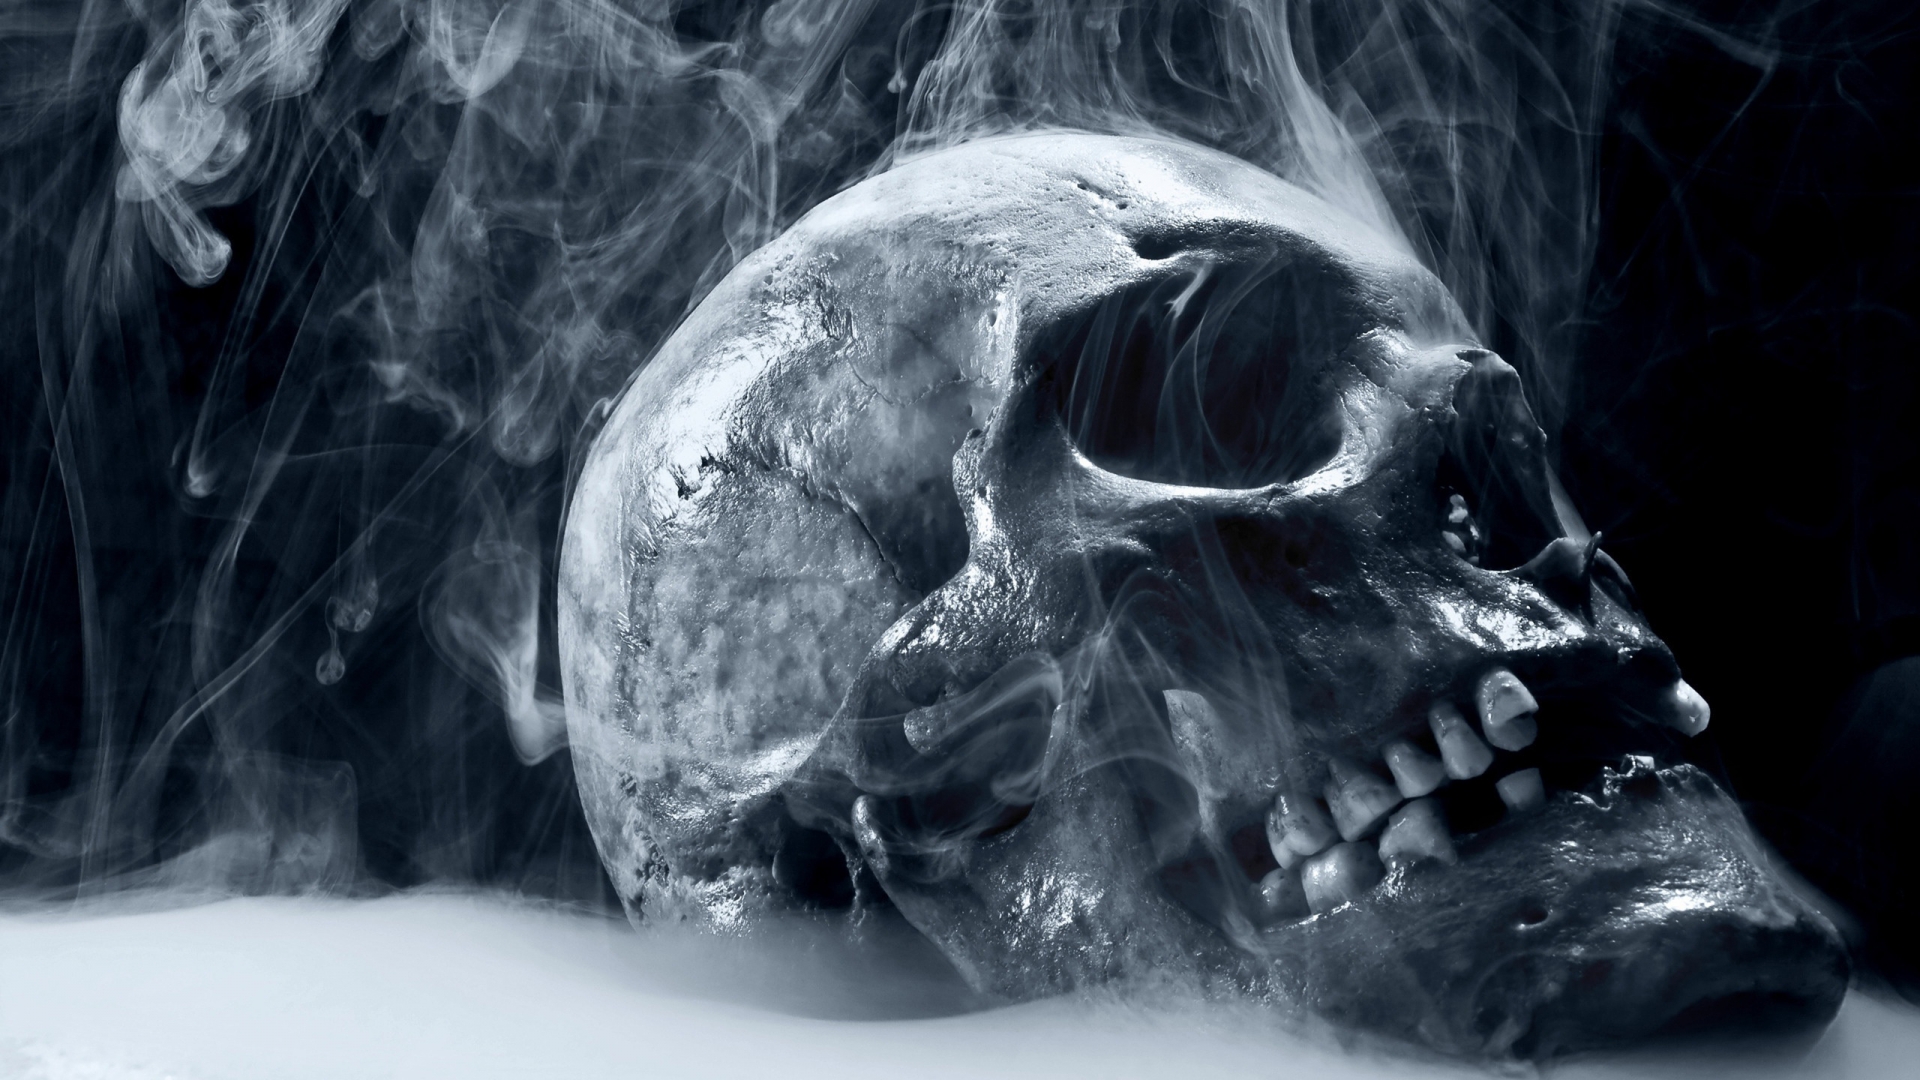 Skull Smoking for 1920 x 1080 HDTV 1080p resolution